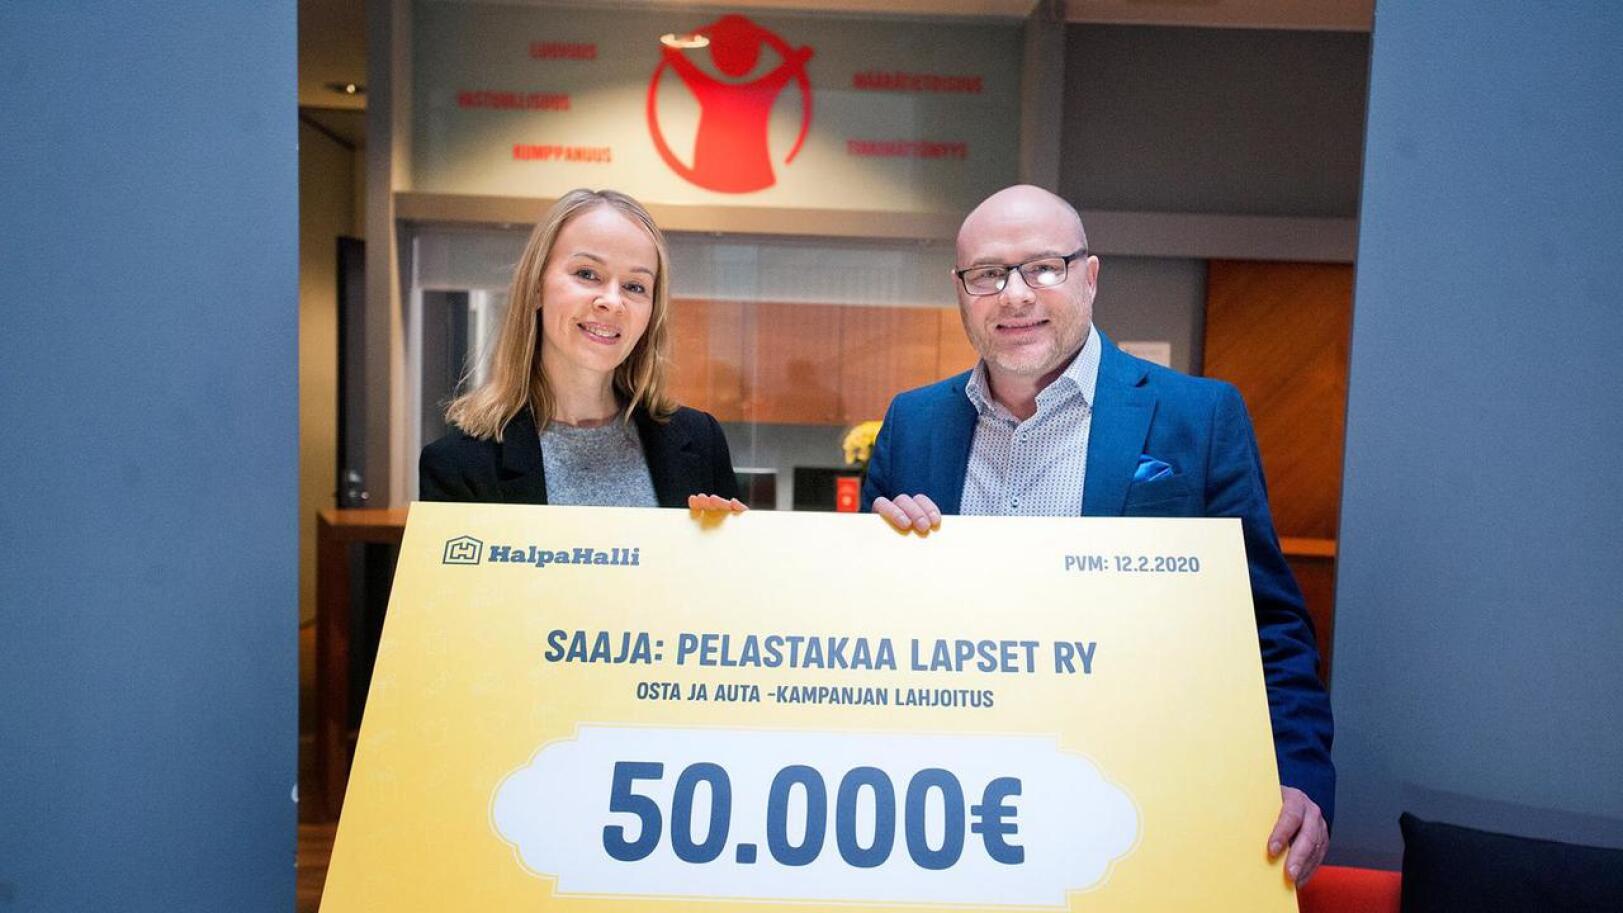 Yritystiimin vetäjä Heli Le otti Pelastakaa Lapset ry:n puolesta lahjoituksen vastaan HalpaHallin markkinointipäällikkö Juha Hakalalta. 